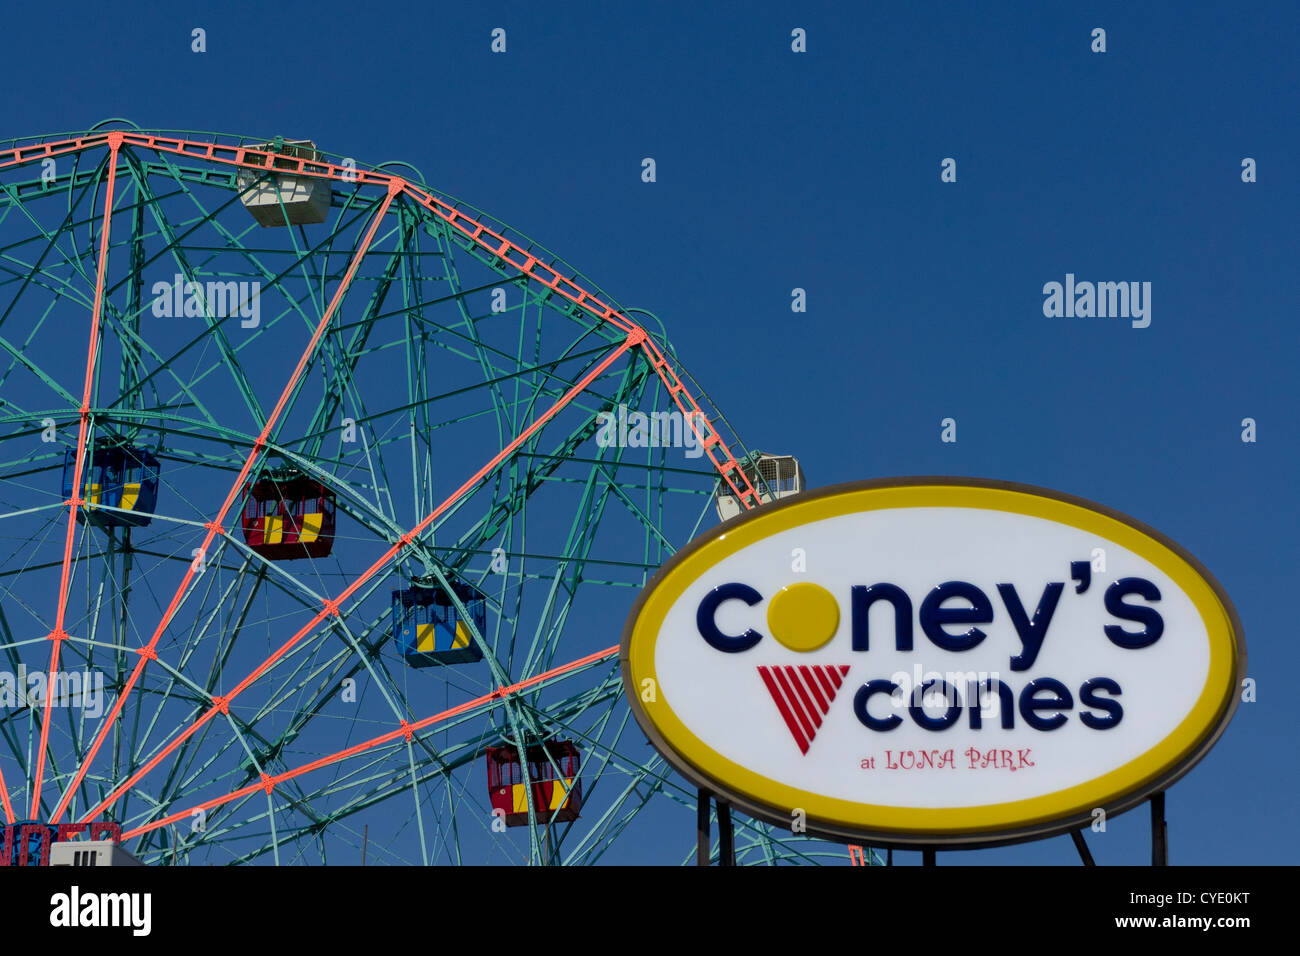 Wonder Wheel im Astroland Vergnügungspark auf Coney Island, mit Strandpromenade Eis Ladenschild, New York, New York, Vereinigte Staaten von Amerika Stockfoto